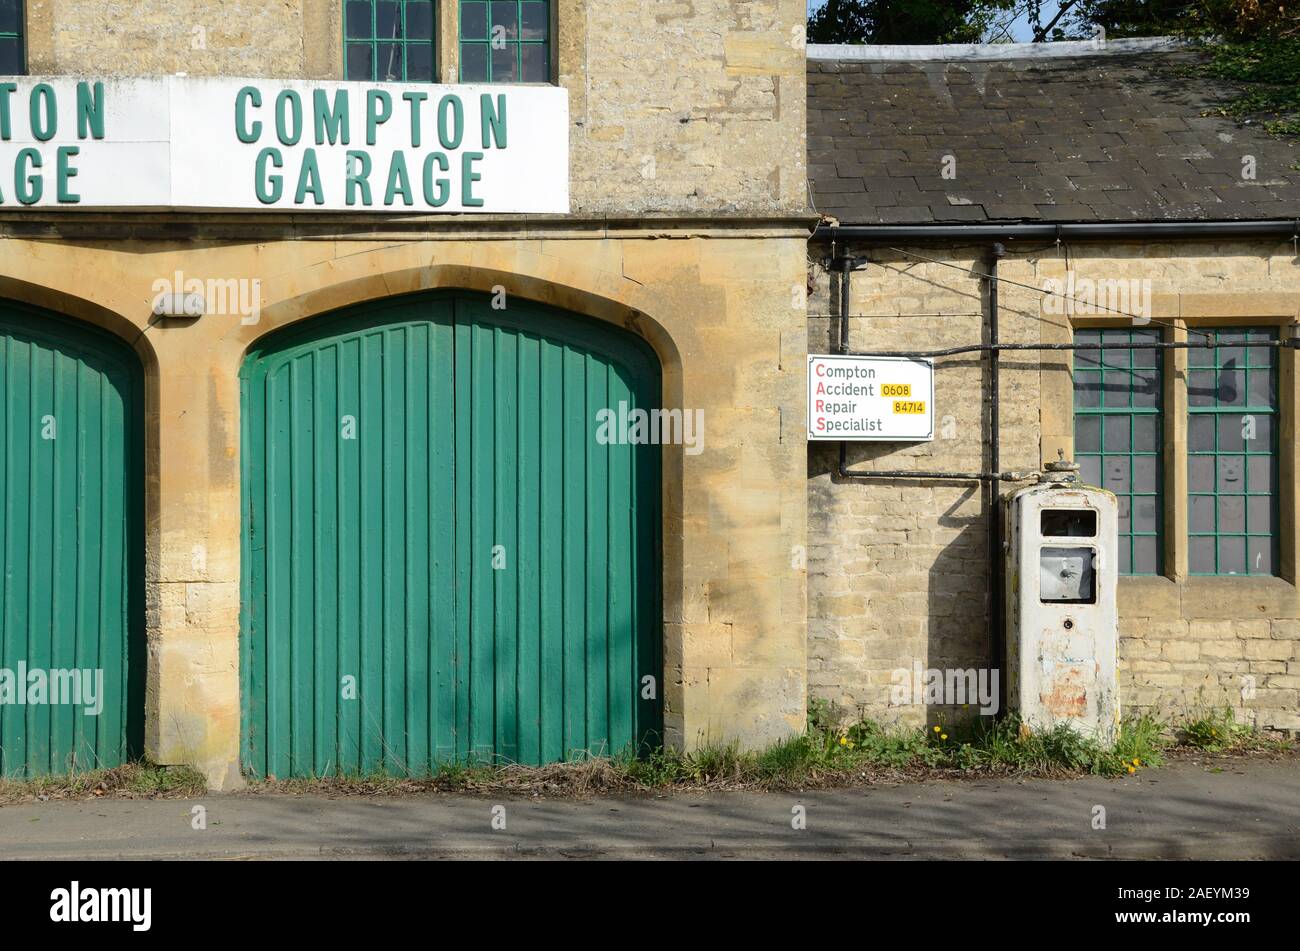 Chiuso, vacante & villaggio abbandonato Garage, stazione di riempimento & vecchia pompa di benzina a Long Compton Warwickshire England Regno Unito Foto Stock